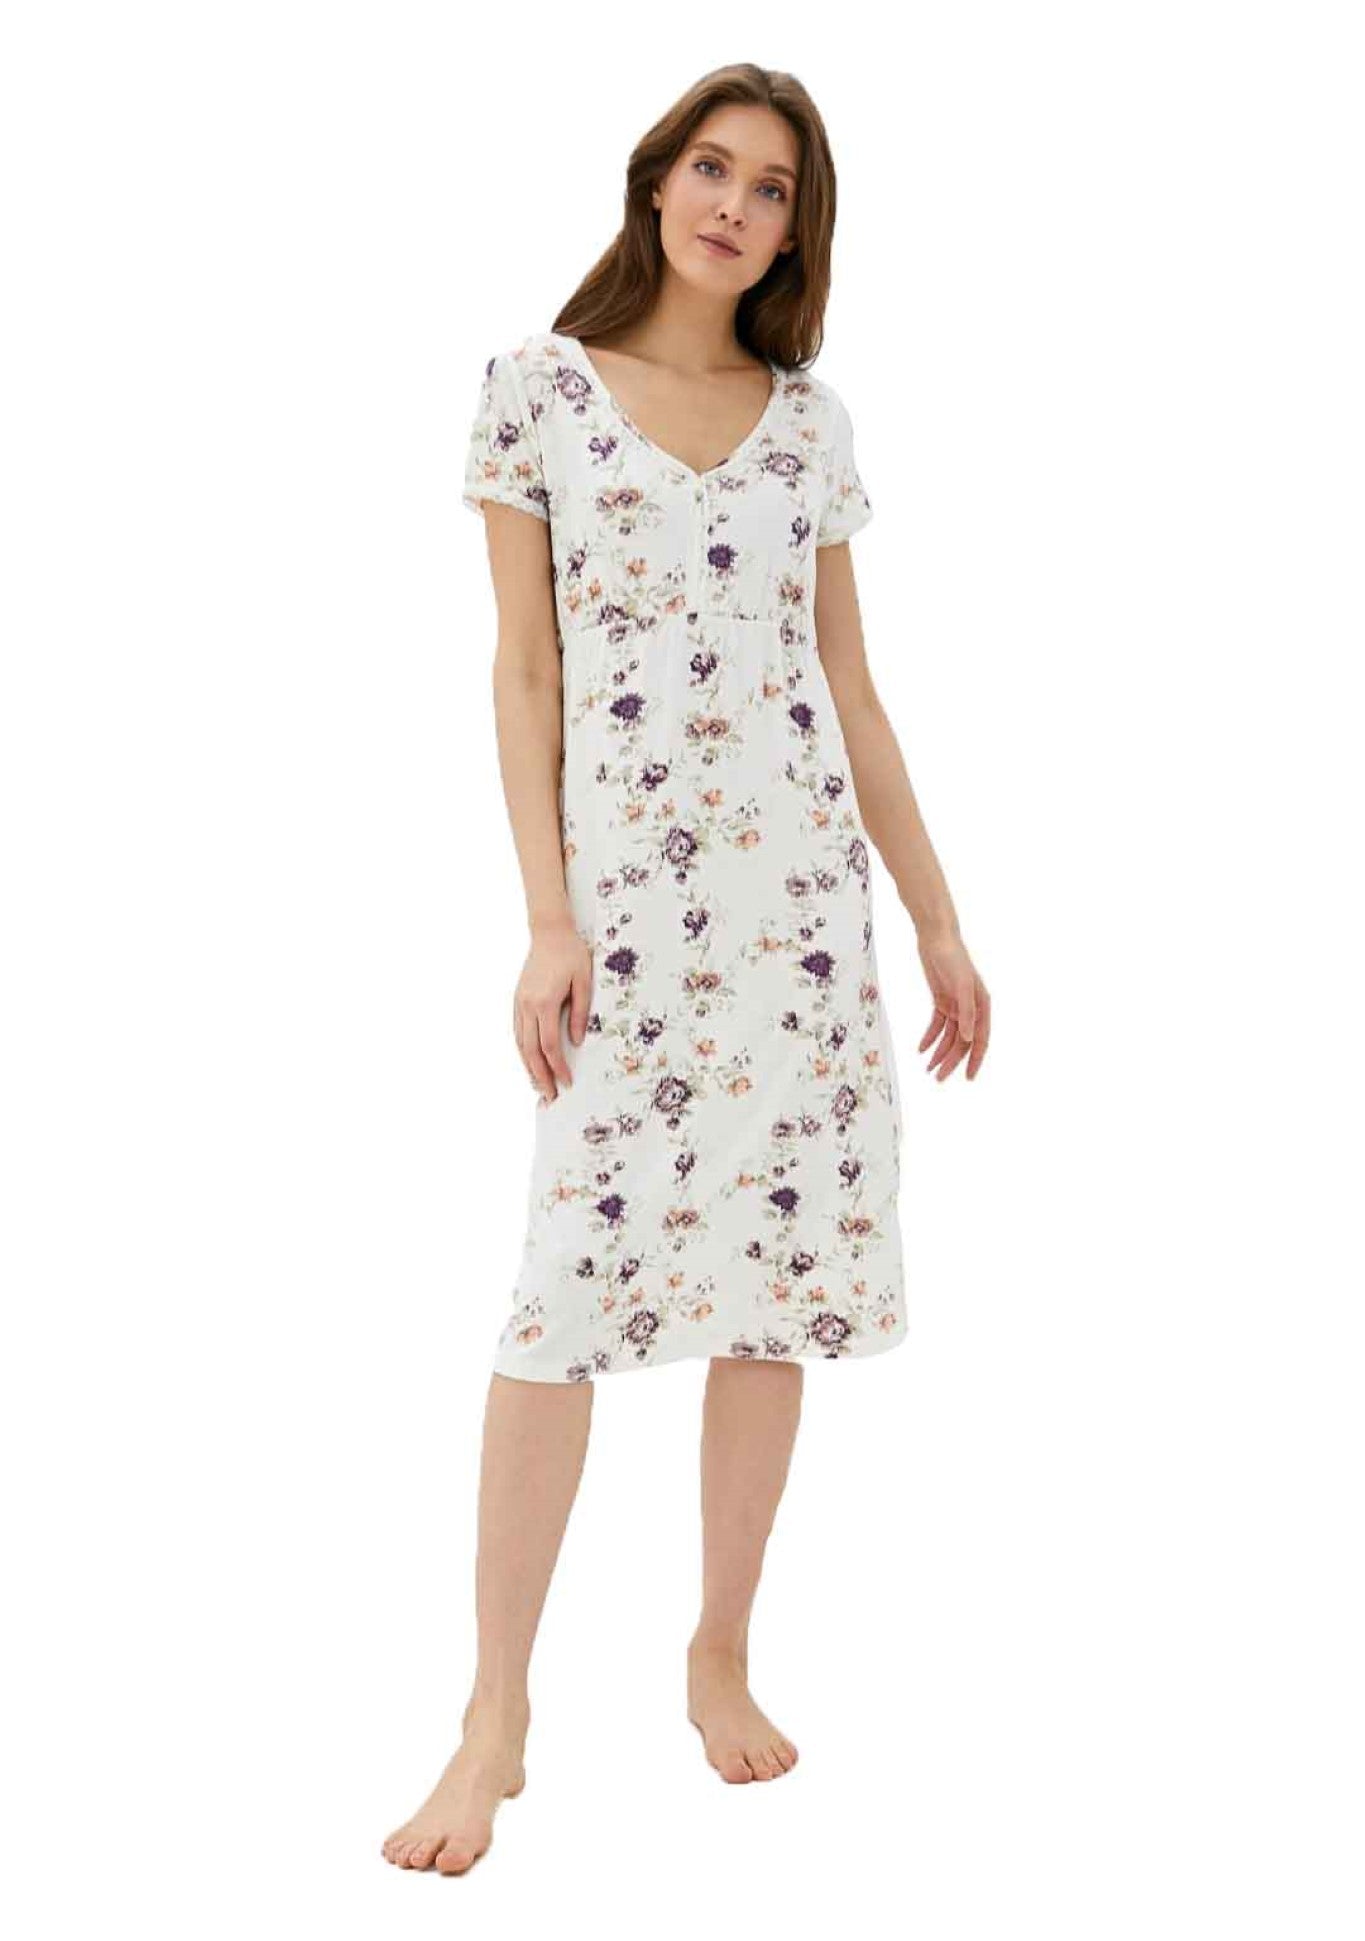 Exklusives Nachtkleid Damen Nachthemd mit floralem Design - V-Ausschnitt